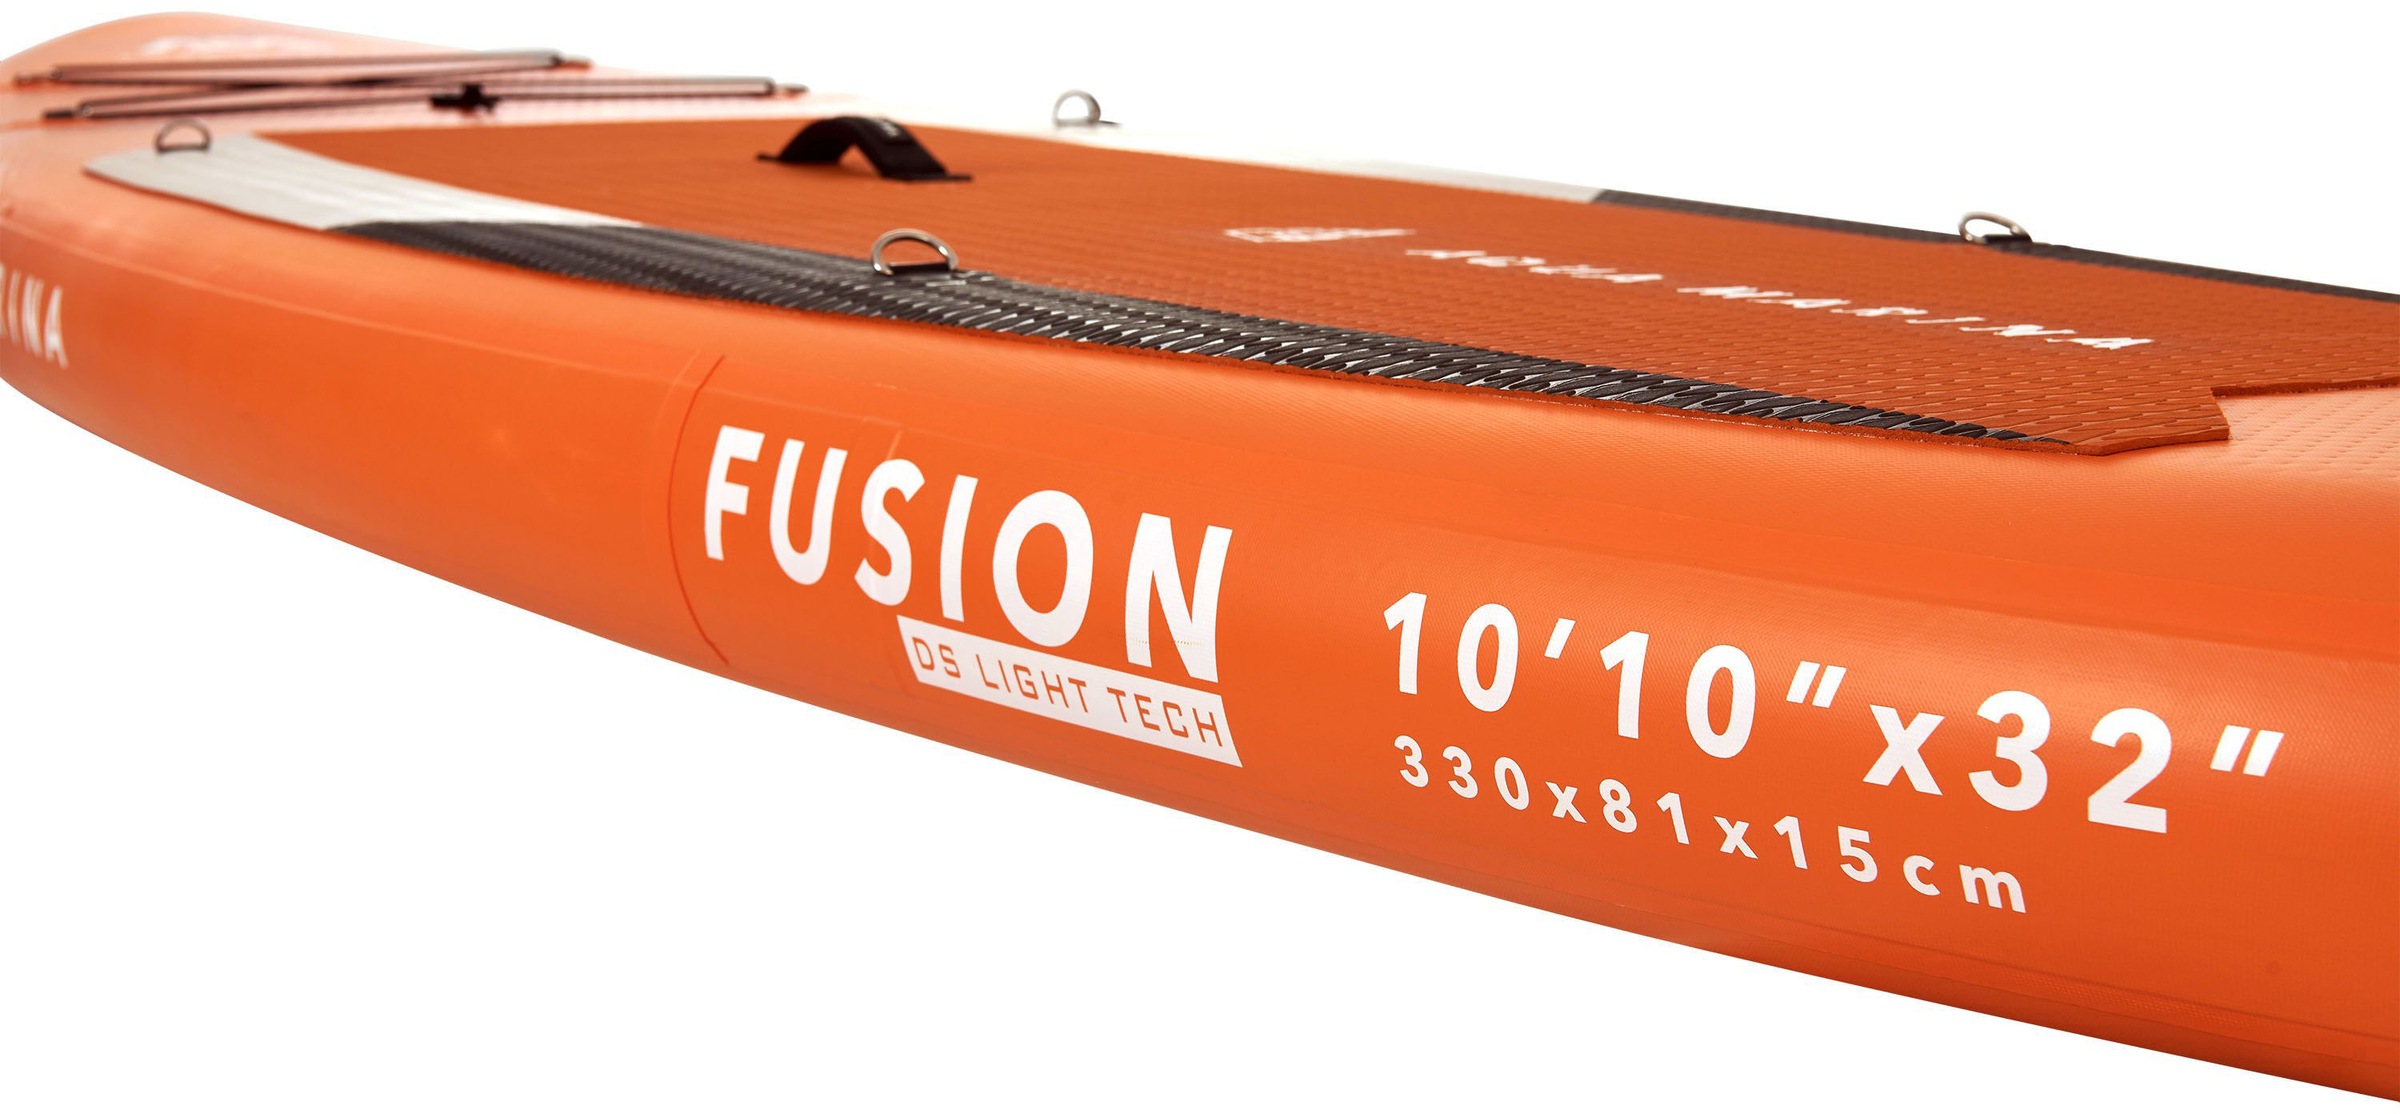 Aqua Marina Inflatable SUP-Board »AQUA MARINA Fusion«, (6 tlg.)